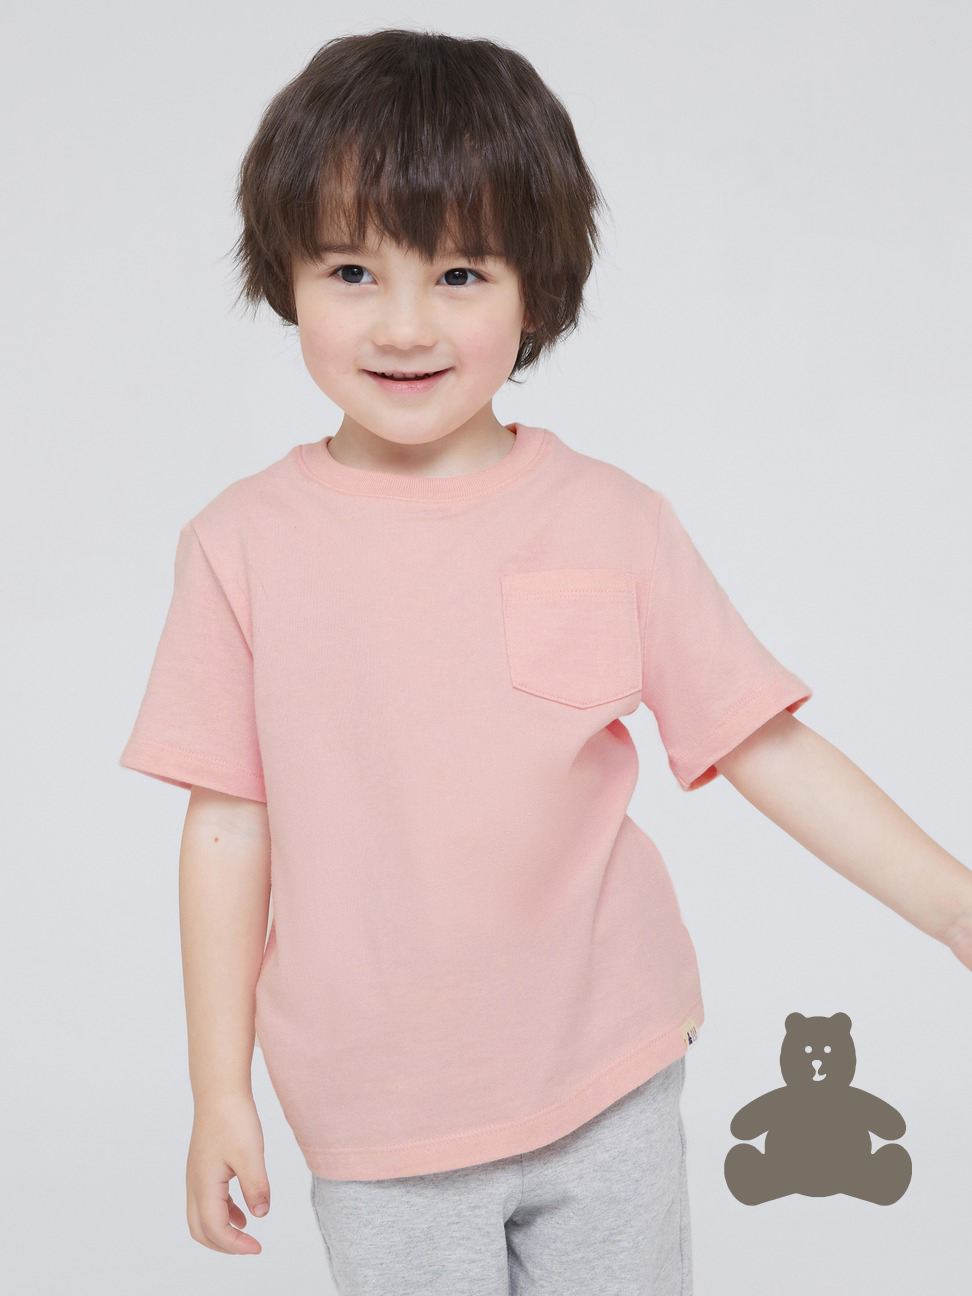 男幼童|布萊納系列 活力純棉素色圓領T恤